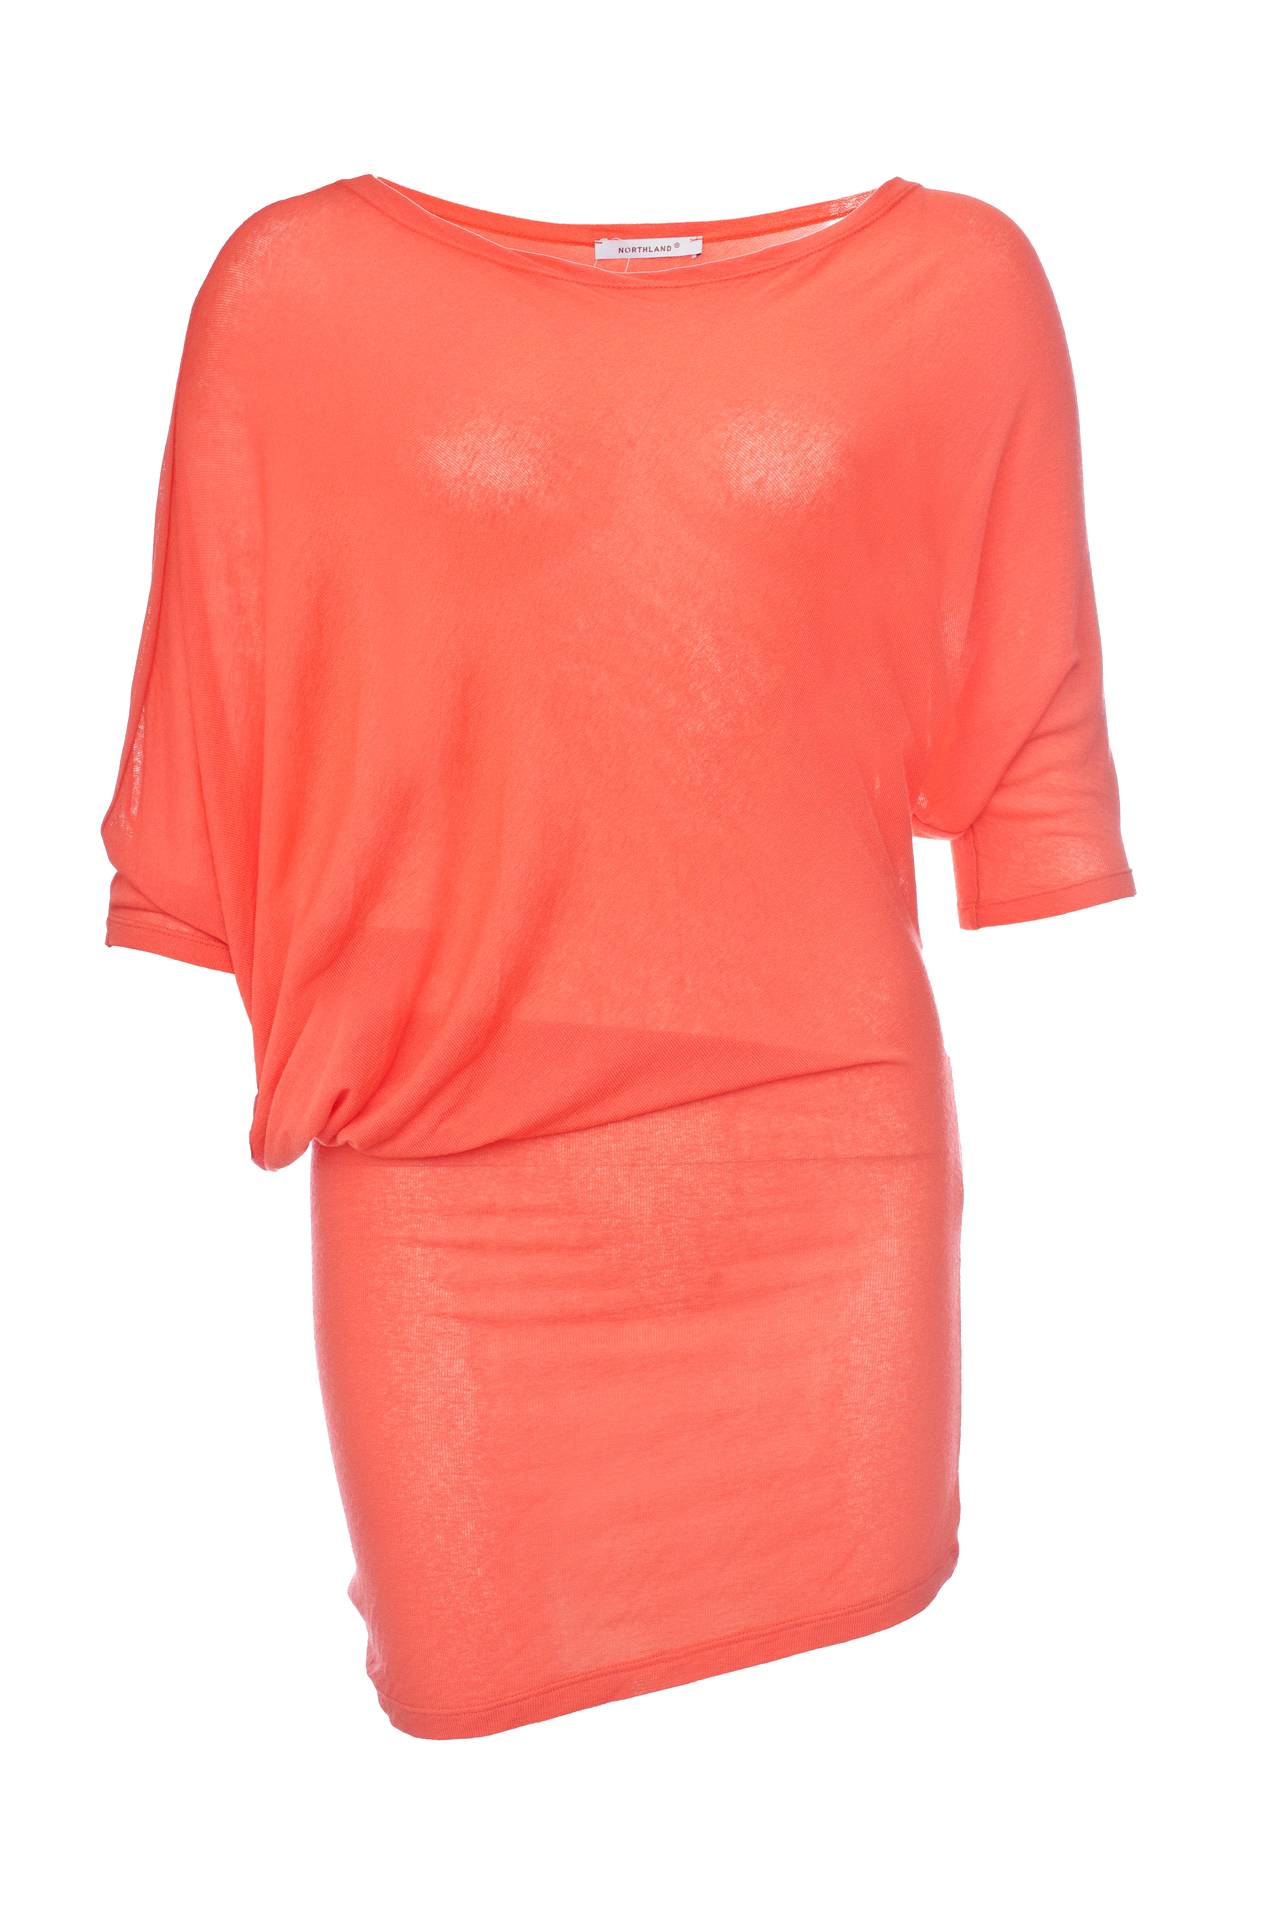 Одежда женская Туника NORTHLAND (UE0224/11.1). Купить за 2950 руб.